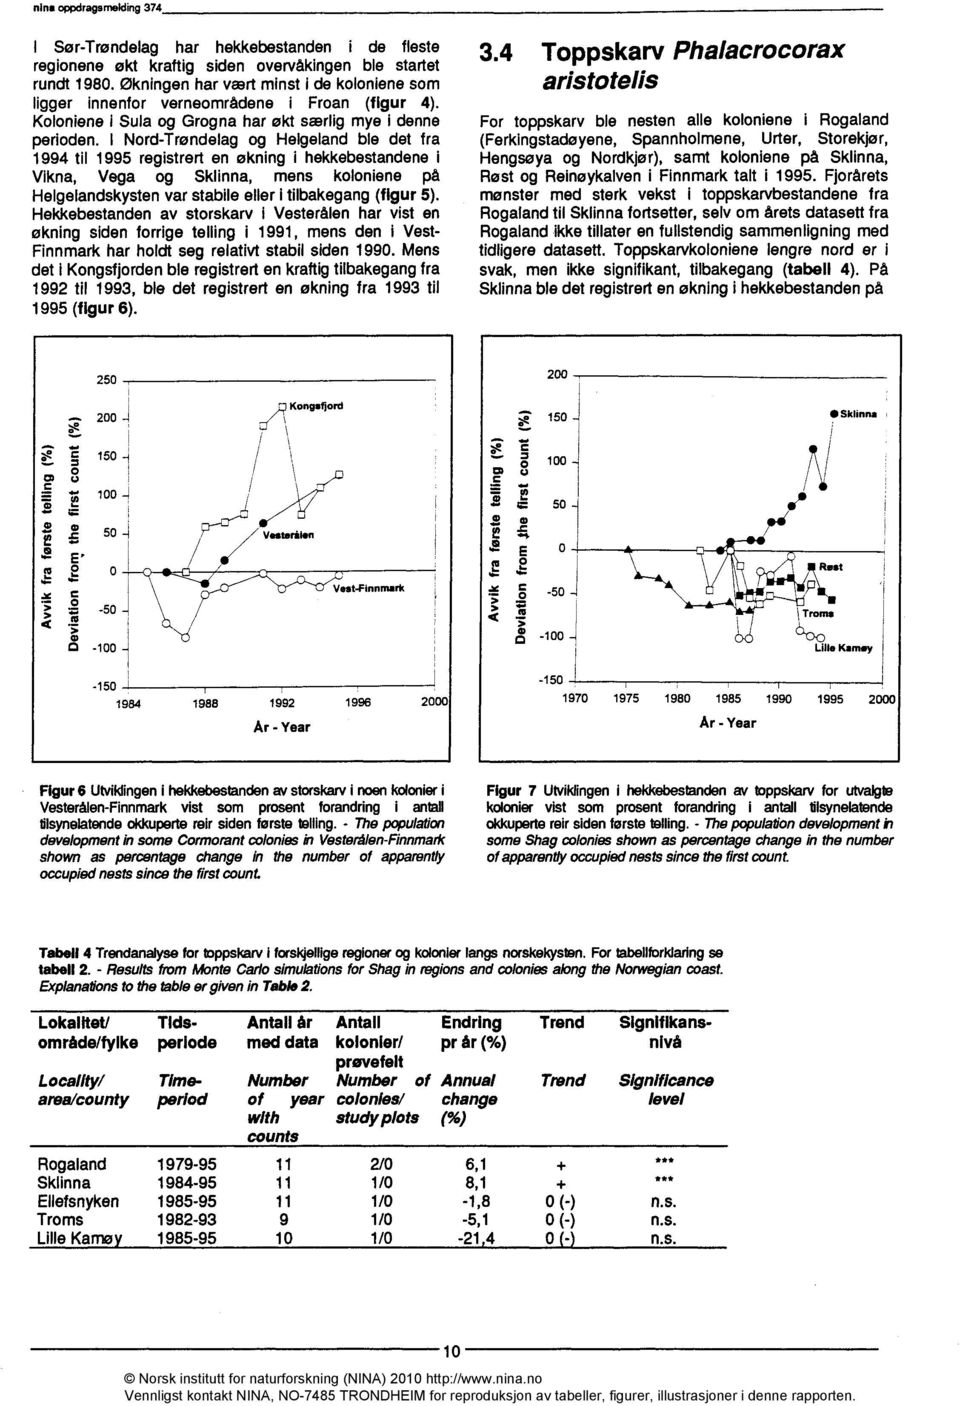 I Nord-Trøndelag og Helgeland ble det fra 1994 til 1995 registrert en økning i hekkebestandene Vikna, Vega og Sklinna, mens koloniene på Helgelandskysten var stabile eller i tilbakegang (figur 5).